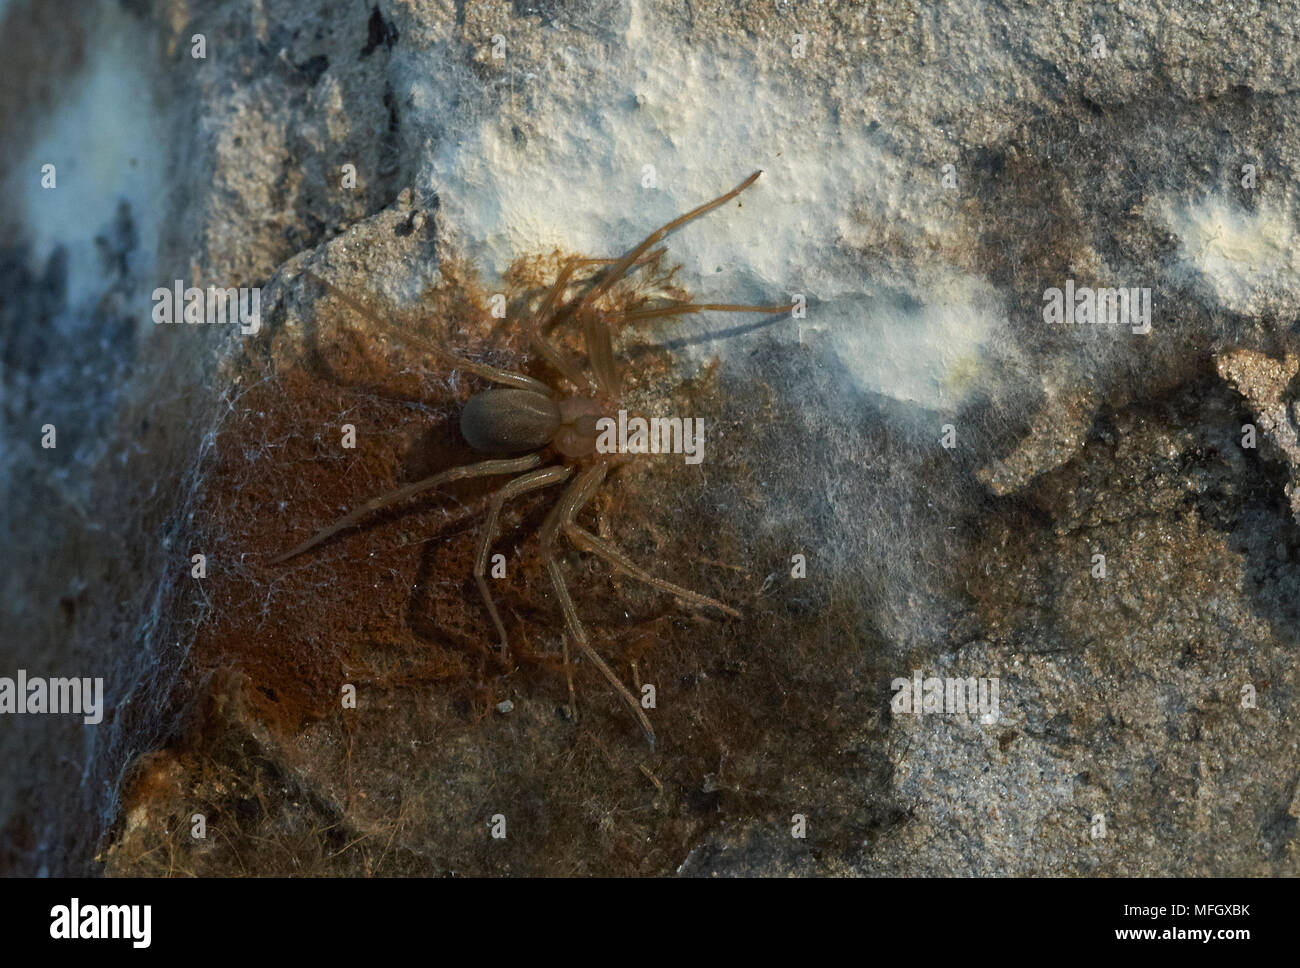 Araignée RECLUSE MÉDITERRANÉEN (Loxosceles rufescens) Menorca une araignée très dangereux trouvés rôdant sous stone Banque D'Images